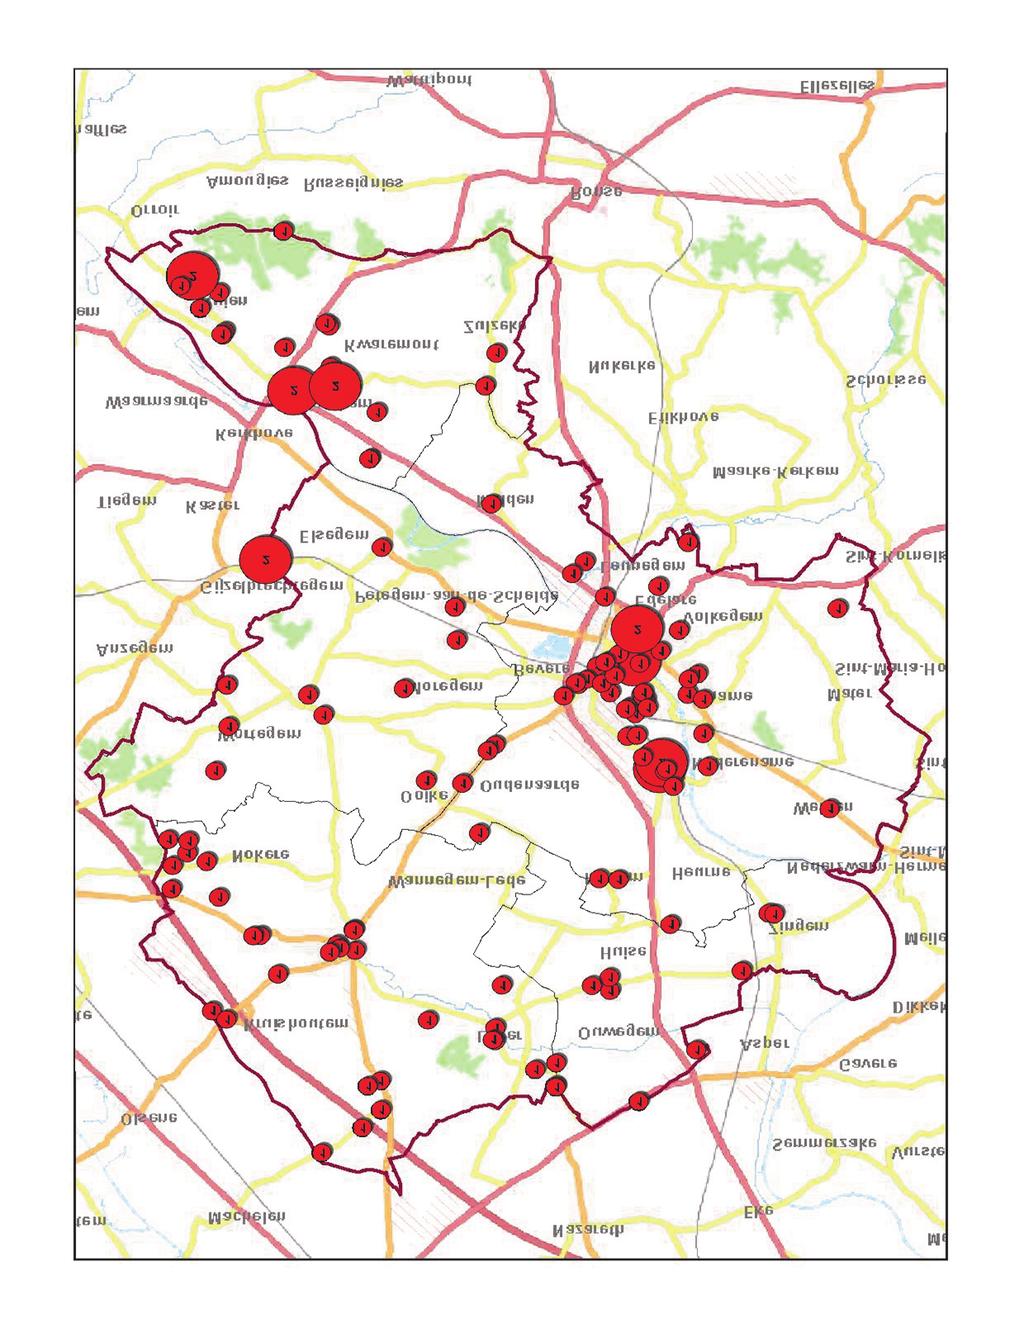 Recherche Woninginbraken 300 250 Woninginbraken 122 woninginbraken werden in 2015 in het totaal door onze politiezone geregistreerd.